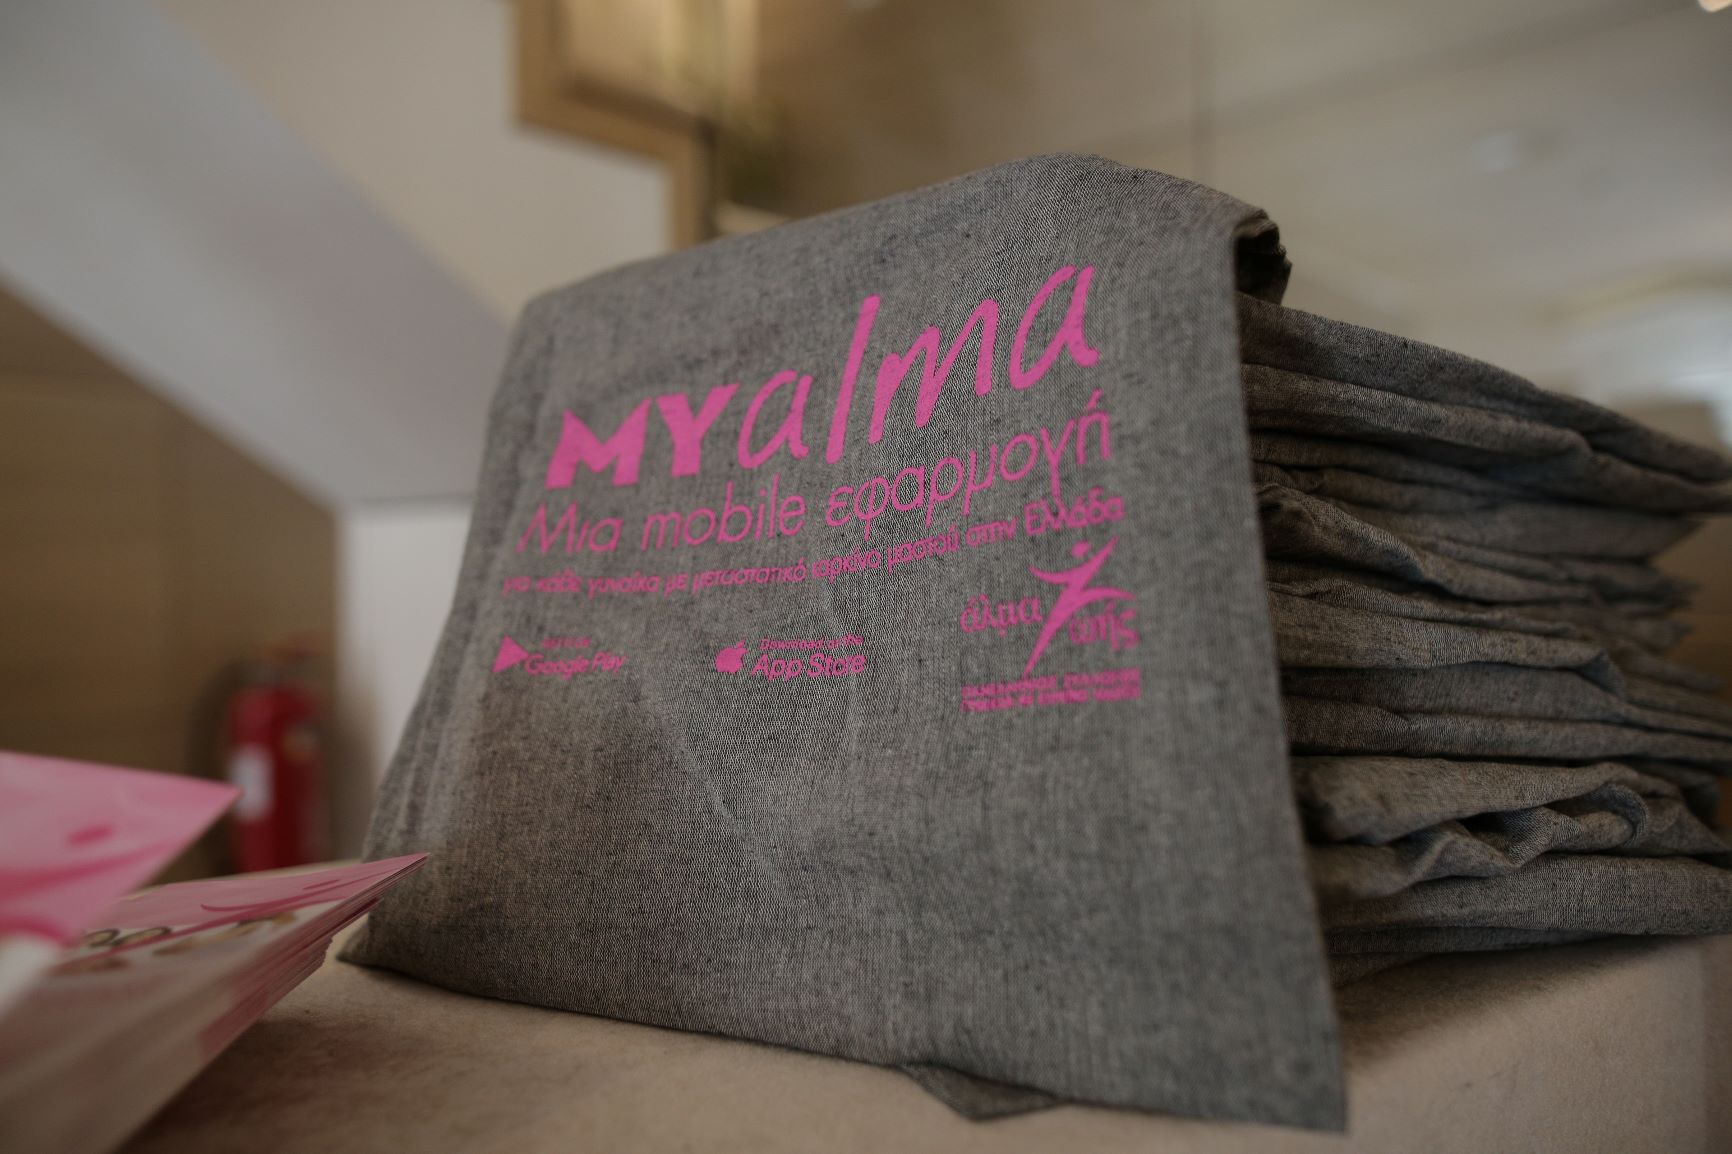 Mobile App: MY alma-Μία mobile εφαρμογή για κάθε γυναίκα με μεταστατικό καρκίνο μαστού